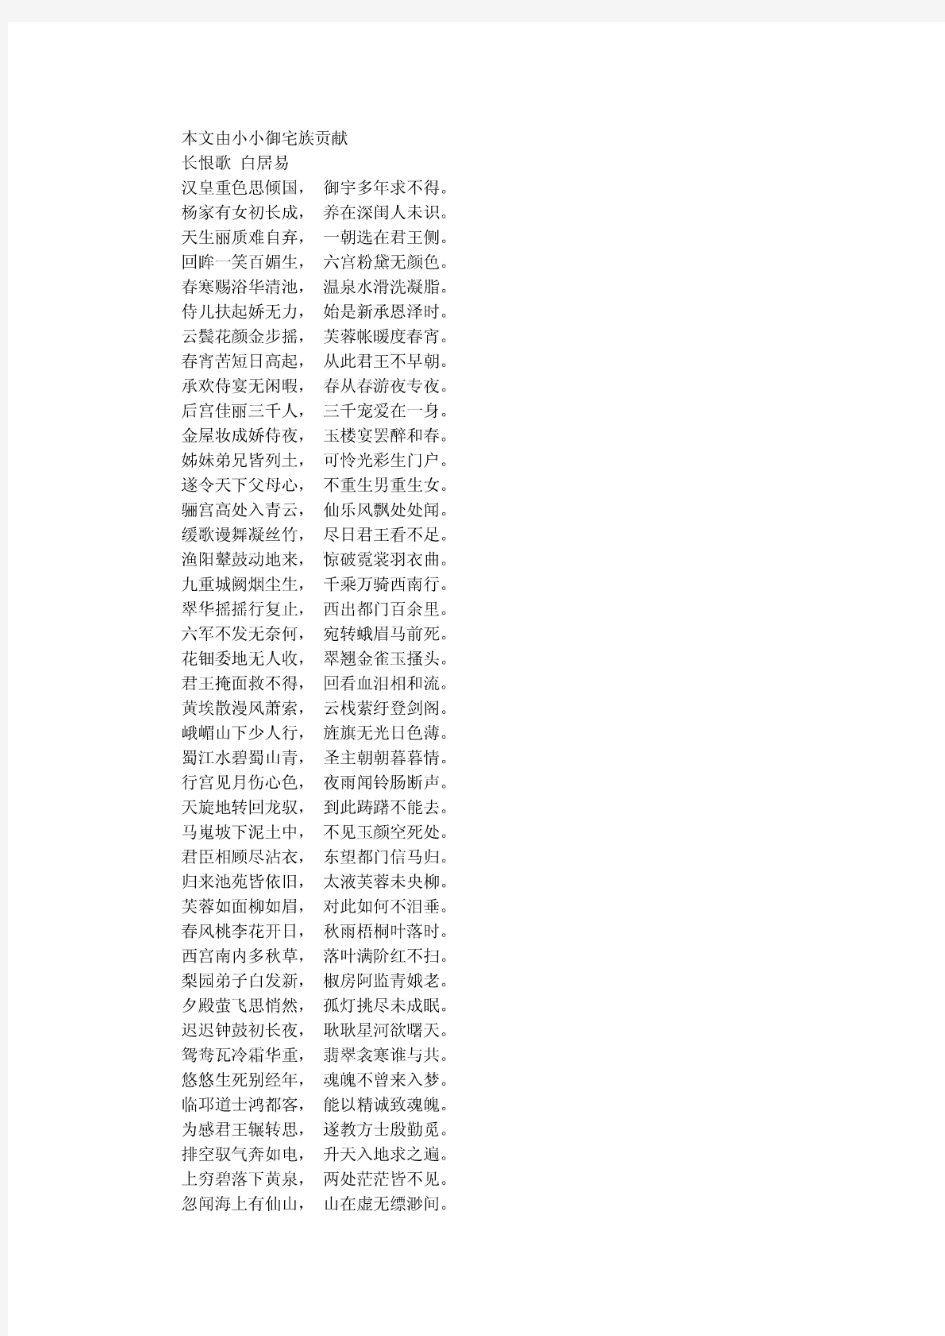 语文中国古代诗歌散文欣赏背诵篇目